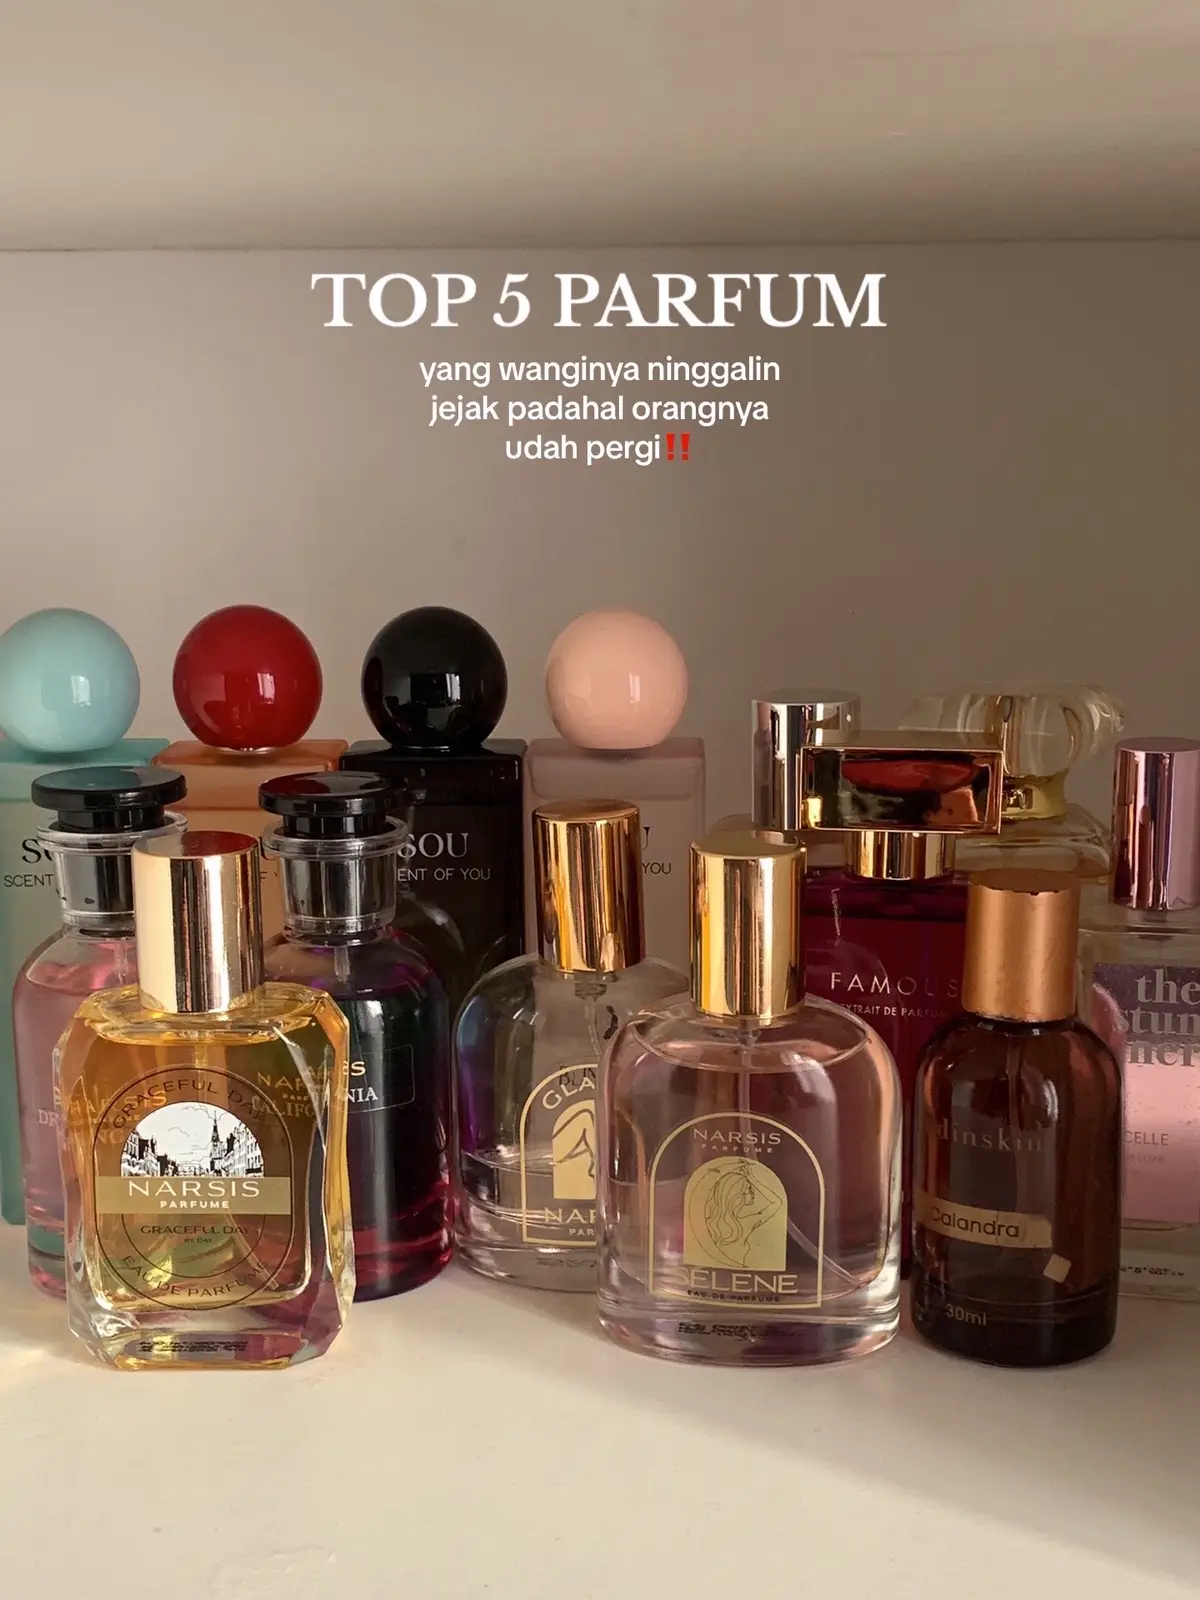 Top 5 parfum yang wanginya enak dan tahan lama yang pernah aku coba!!💗 #parfum #parfumwangi #tahanlama #parfumviral #narsisparfum #narsisglands #fyp 